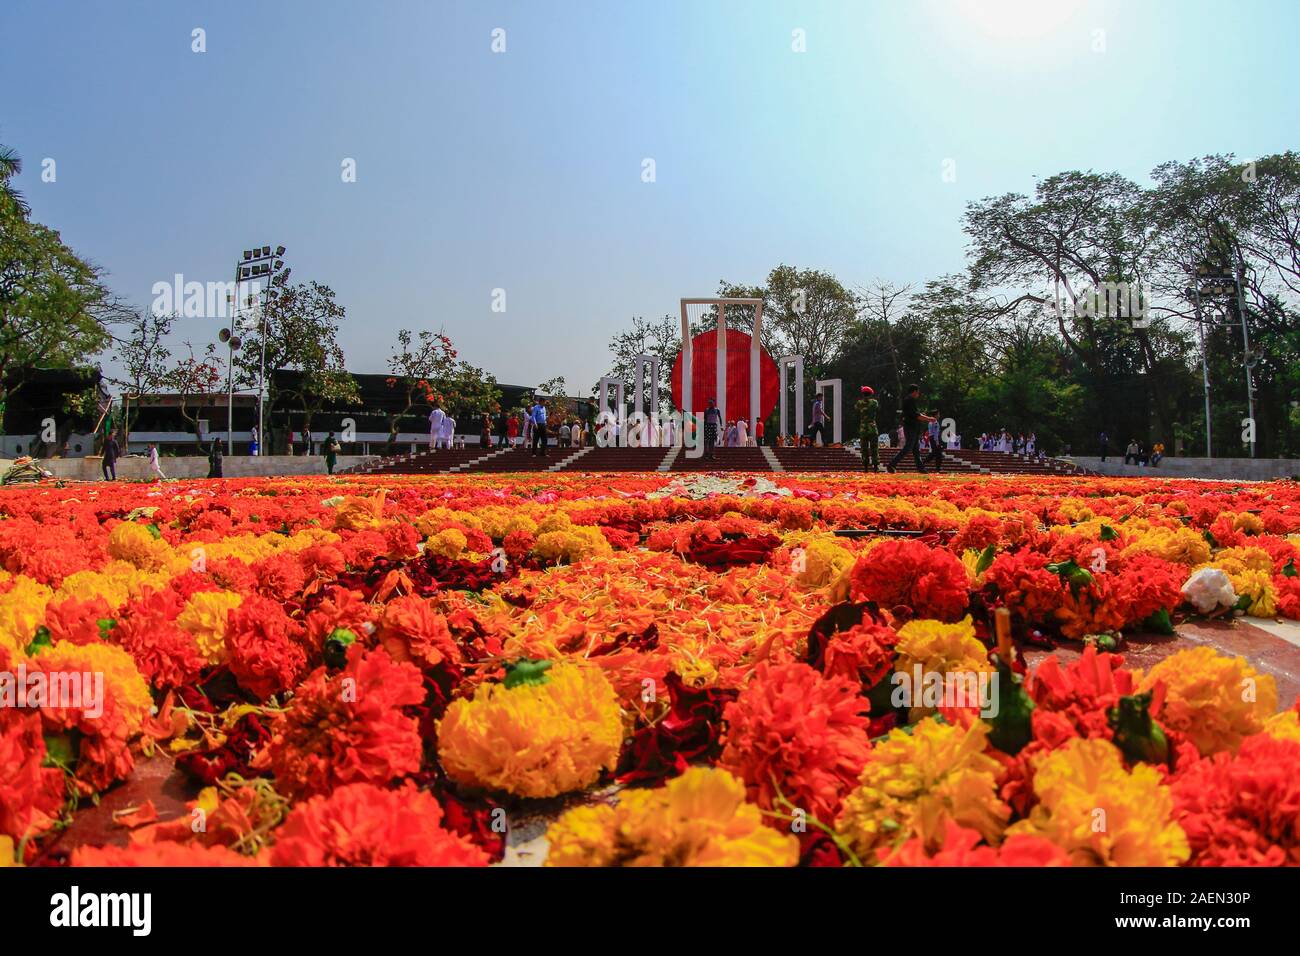 Zentrale Shahid Minar mit Kränzen und Blumen, wie die Nation ist eine Hommage an die Sprache der Bewegung Märtyrer am 21. Februar. Dhaka, Bangladesch. Stockfoto